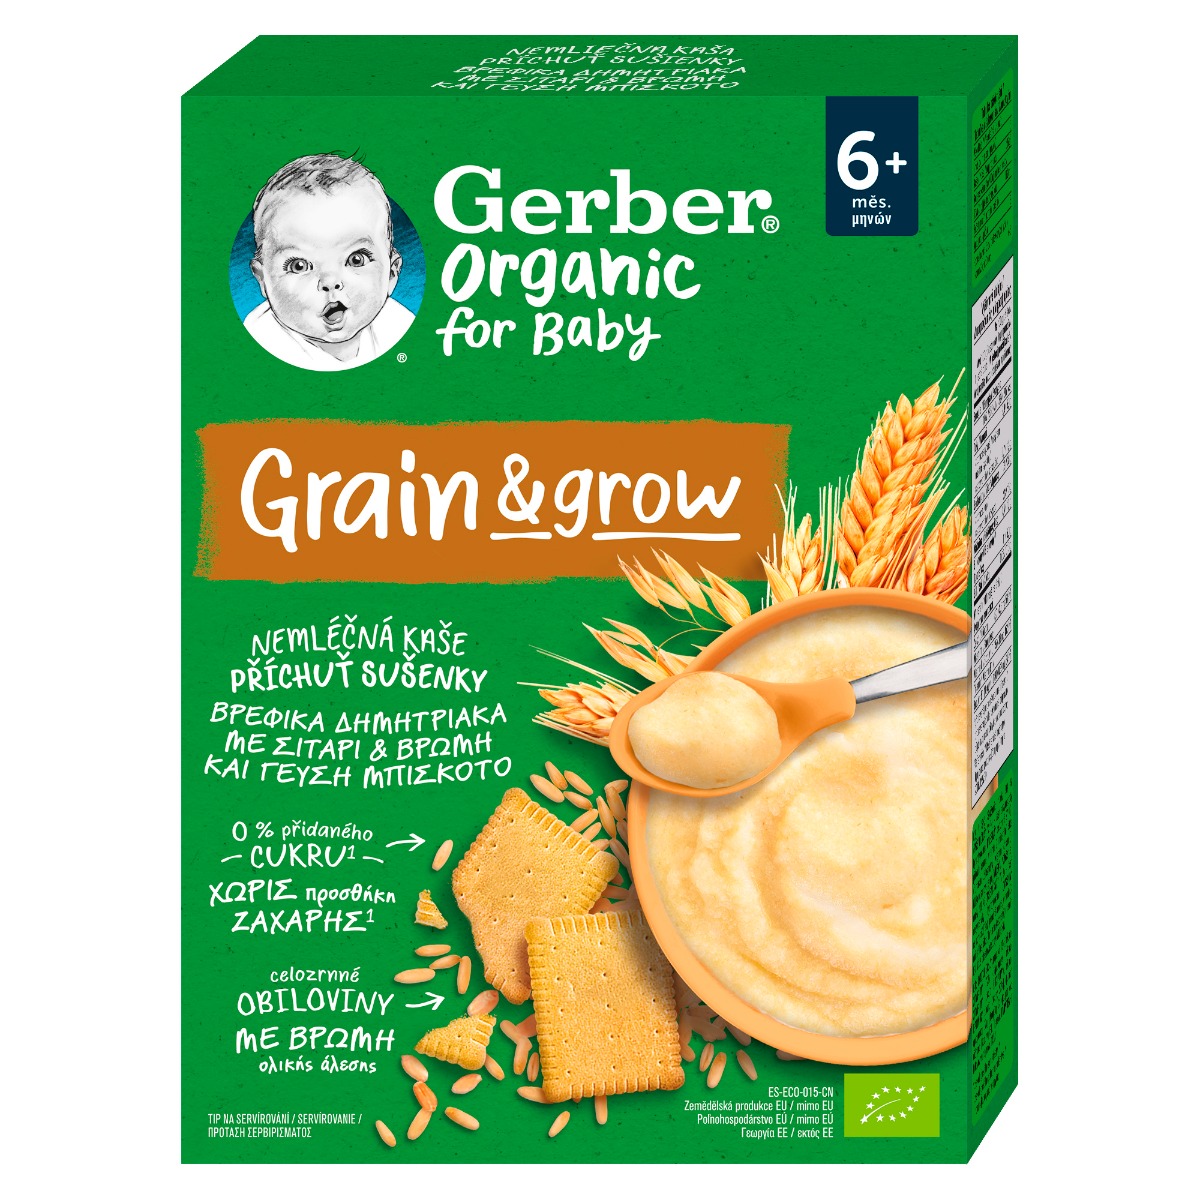 Gerber Organic for Baby Nemléčná kaše s příchutí sušenky 200 g Gerber